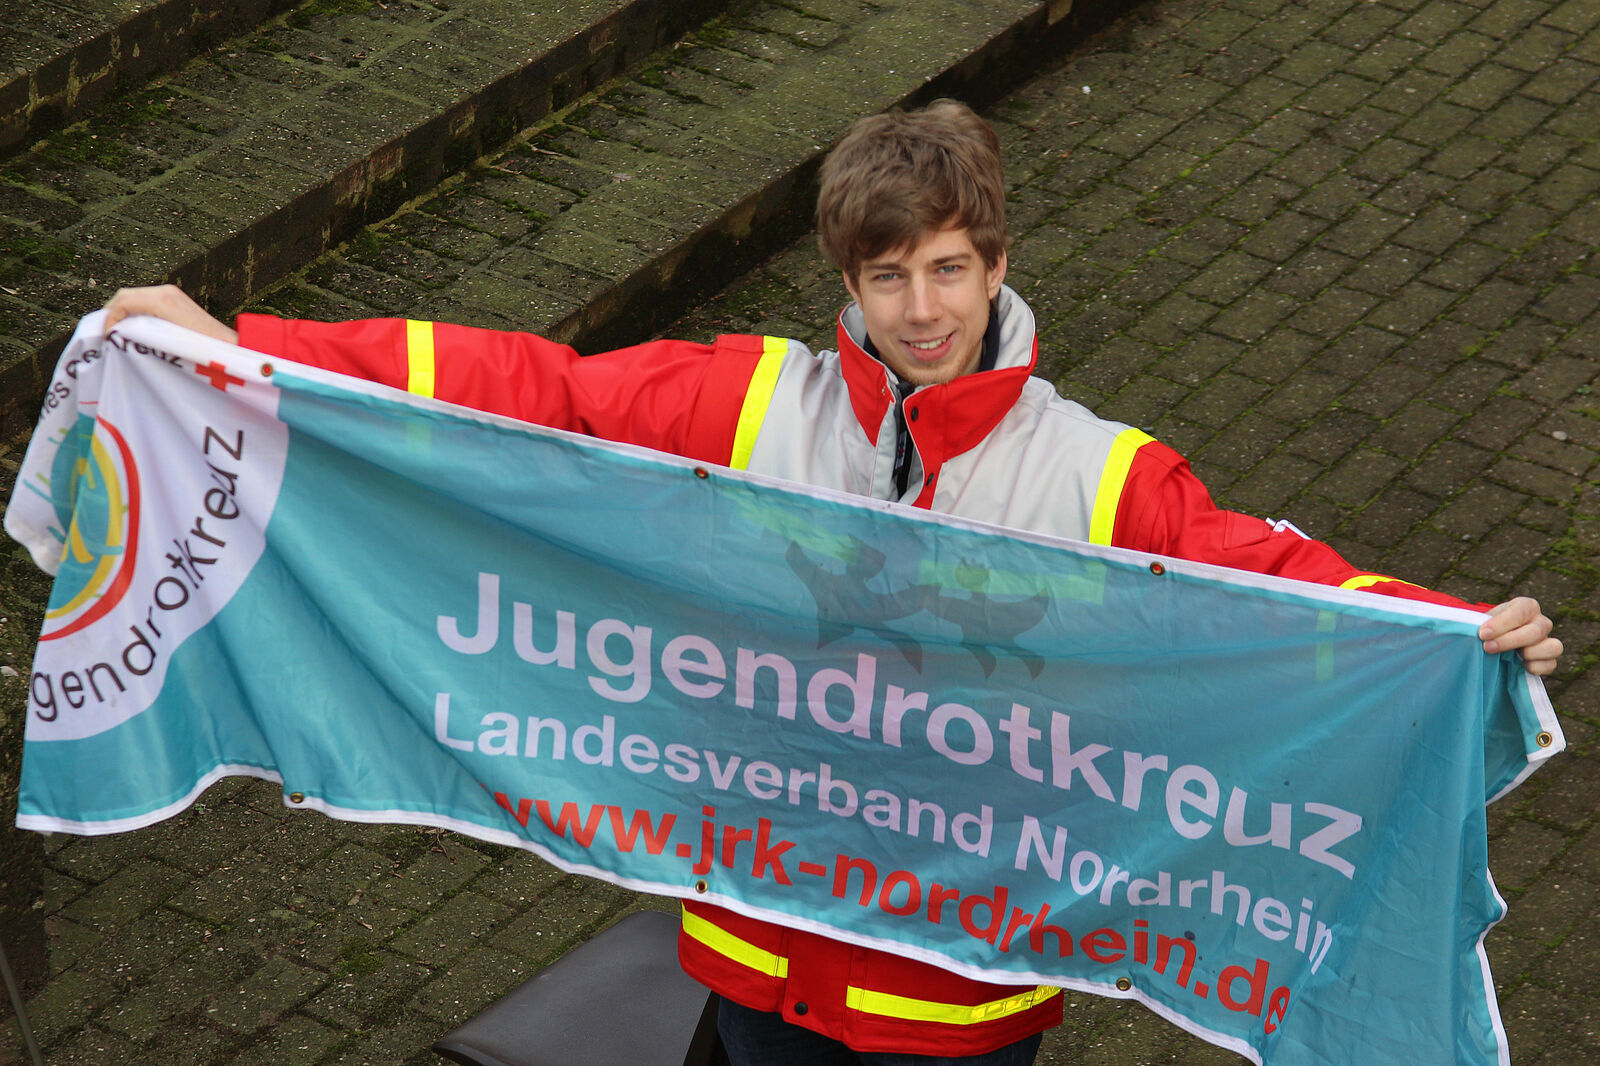 Bild: Ein junger Mensch hält einen Banner. Auf dem Banner ist der Schriftzug "Jugendrotkreuz Landesverband Nordrhein" und die Website www.jrk-nordrhein.de zu lesen.